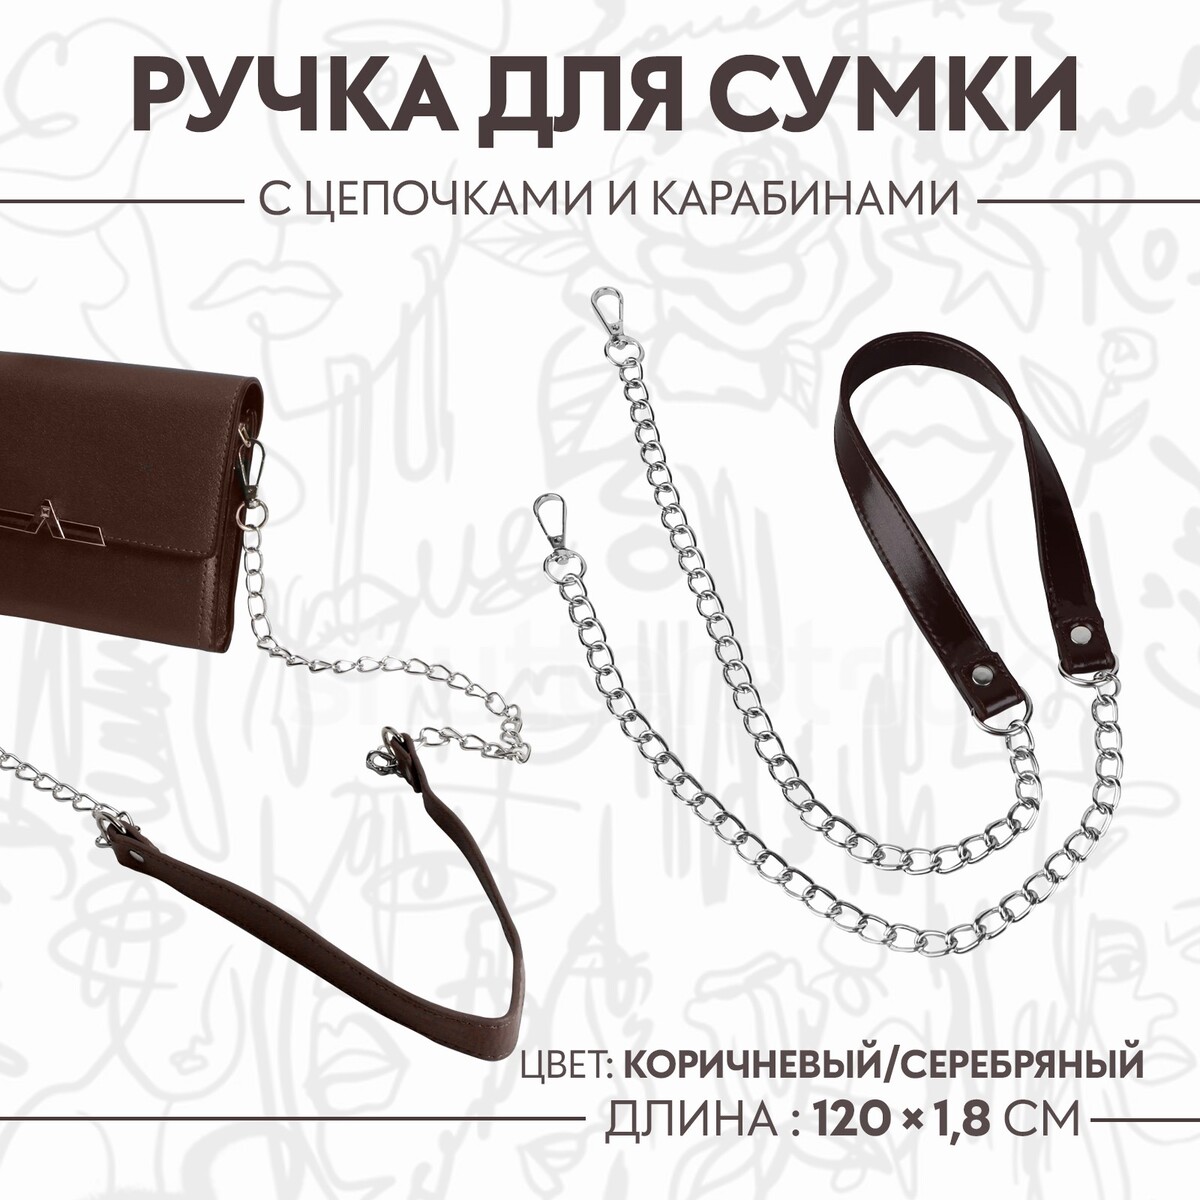 Ручка для сумки, с цепочками и карабинами, 120 × 1,8 см, цвет коричневый ручка для сумки с цепочками и карабинами 120 × 1 8 см бордовый